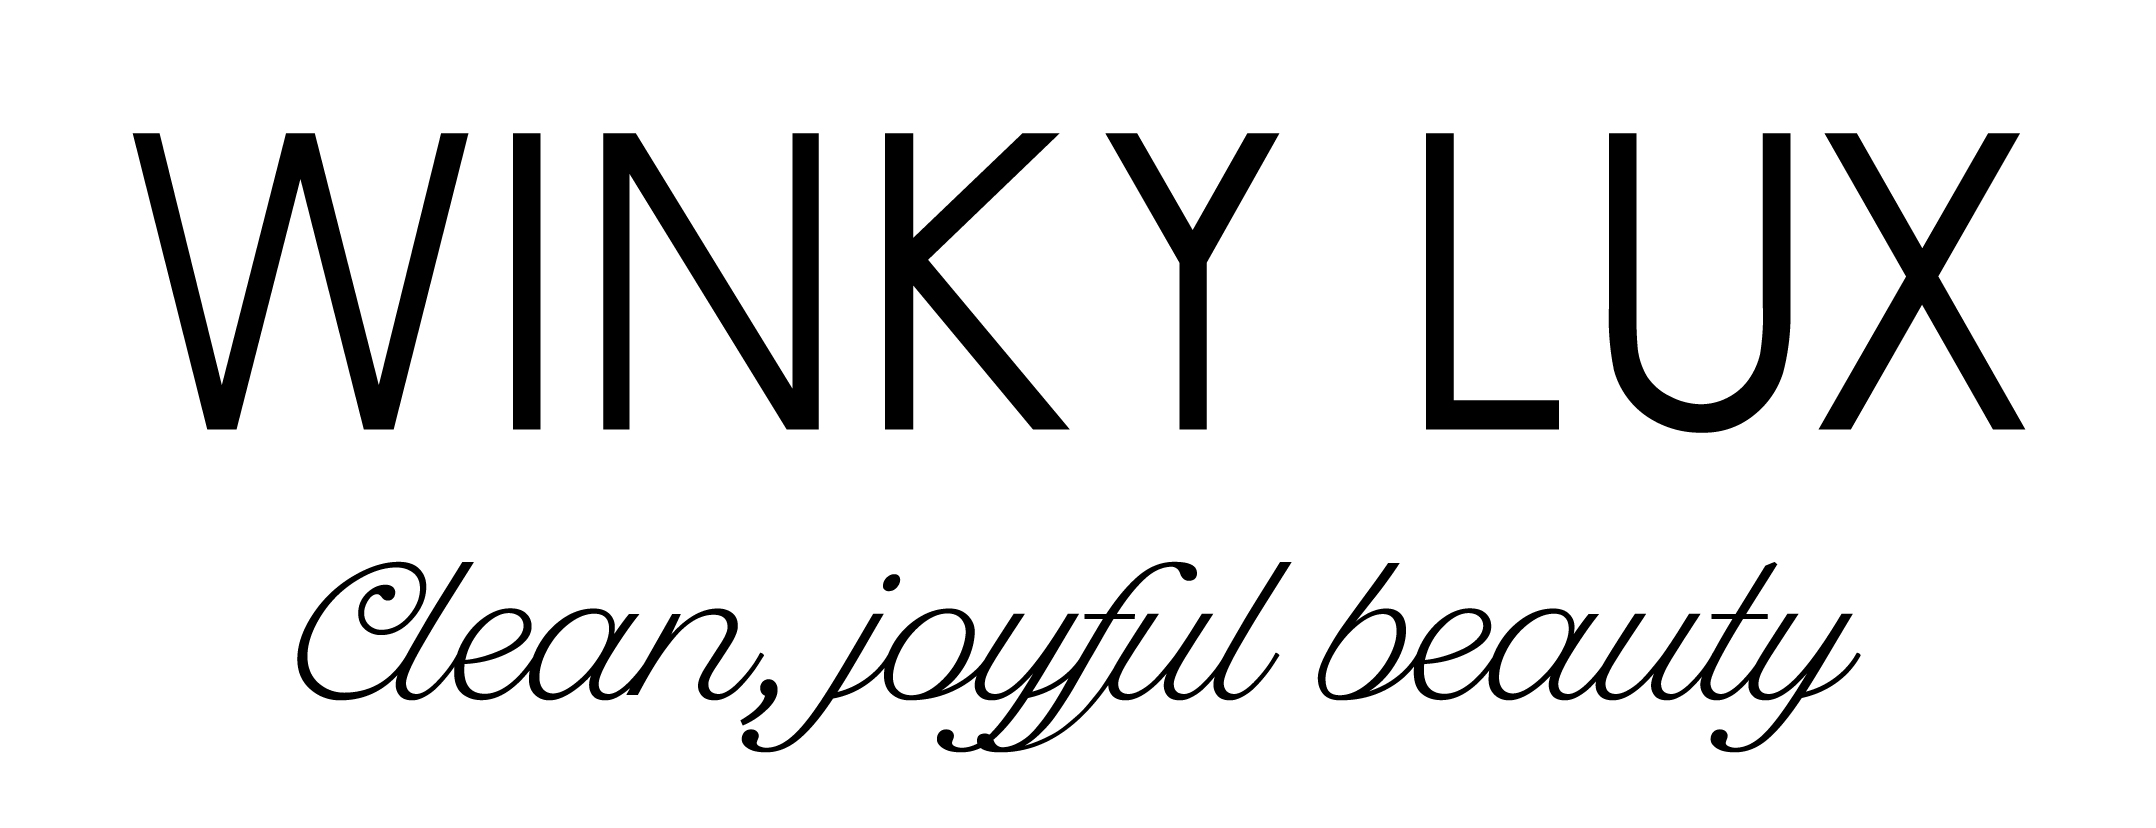 Winky Lux Кодове за отстъпка 